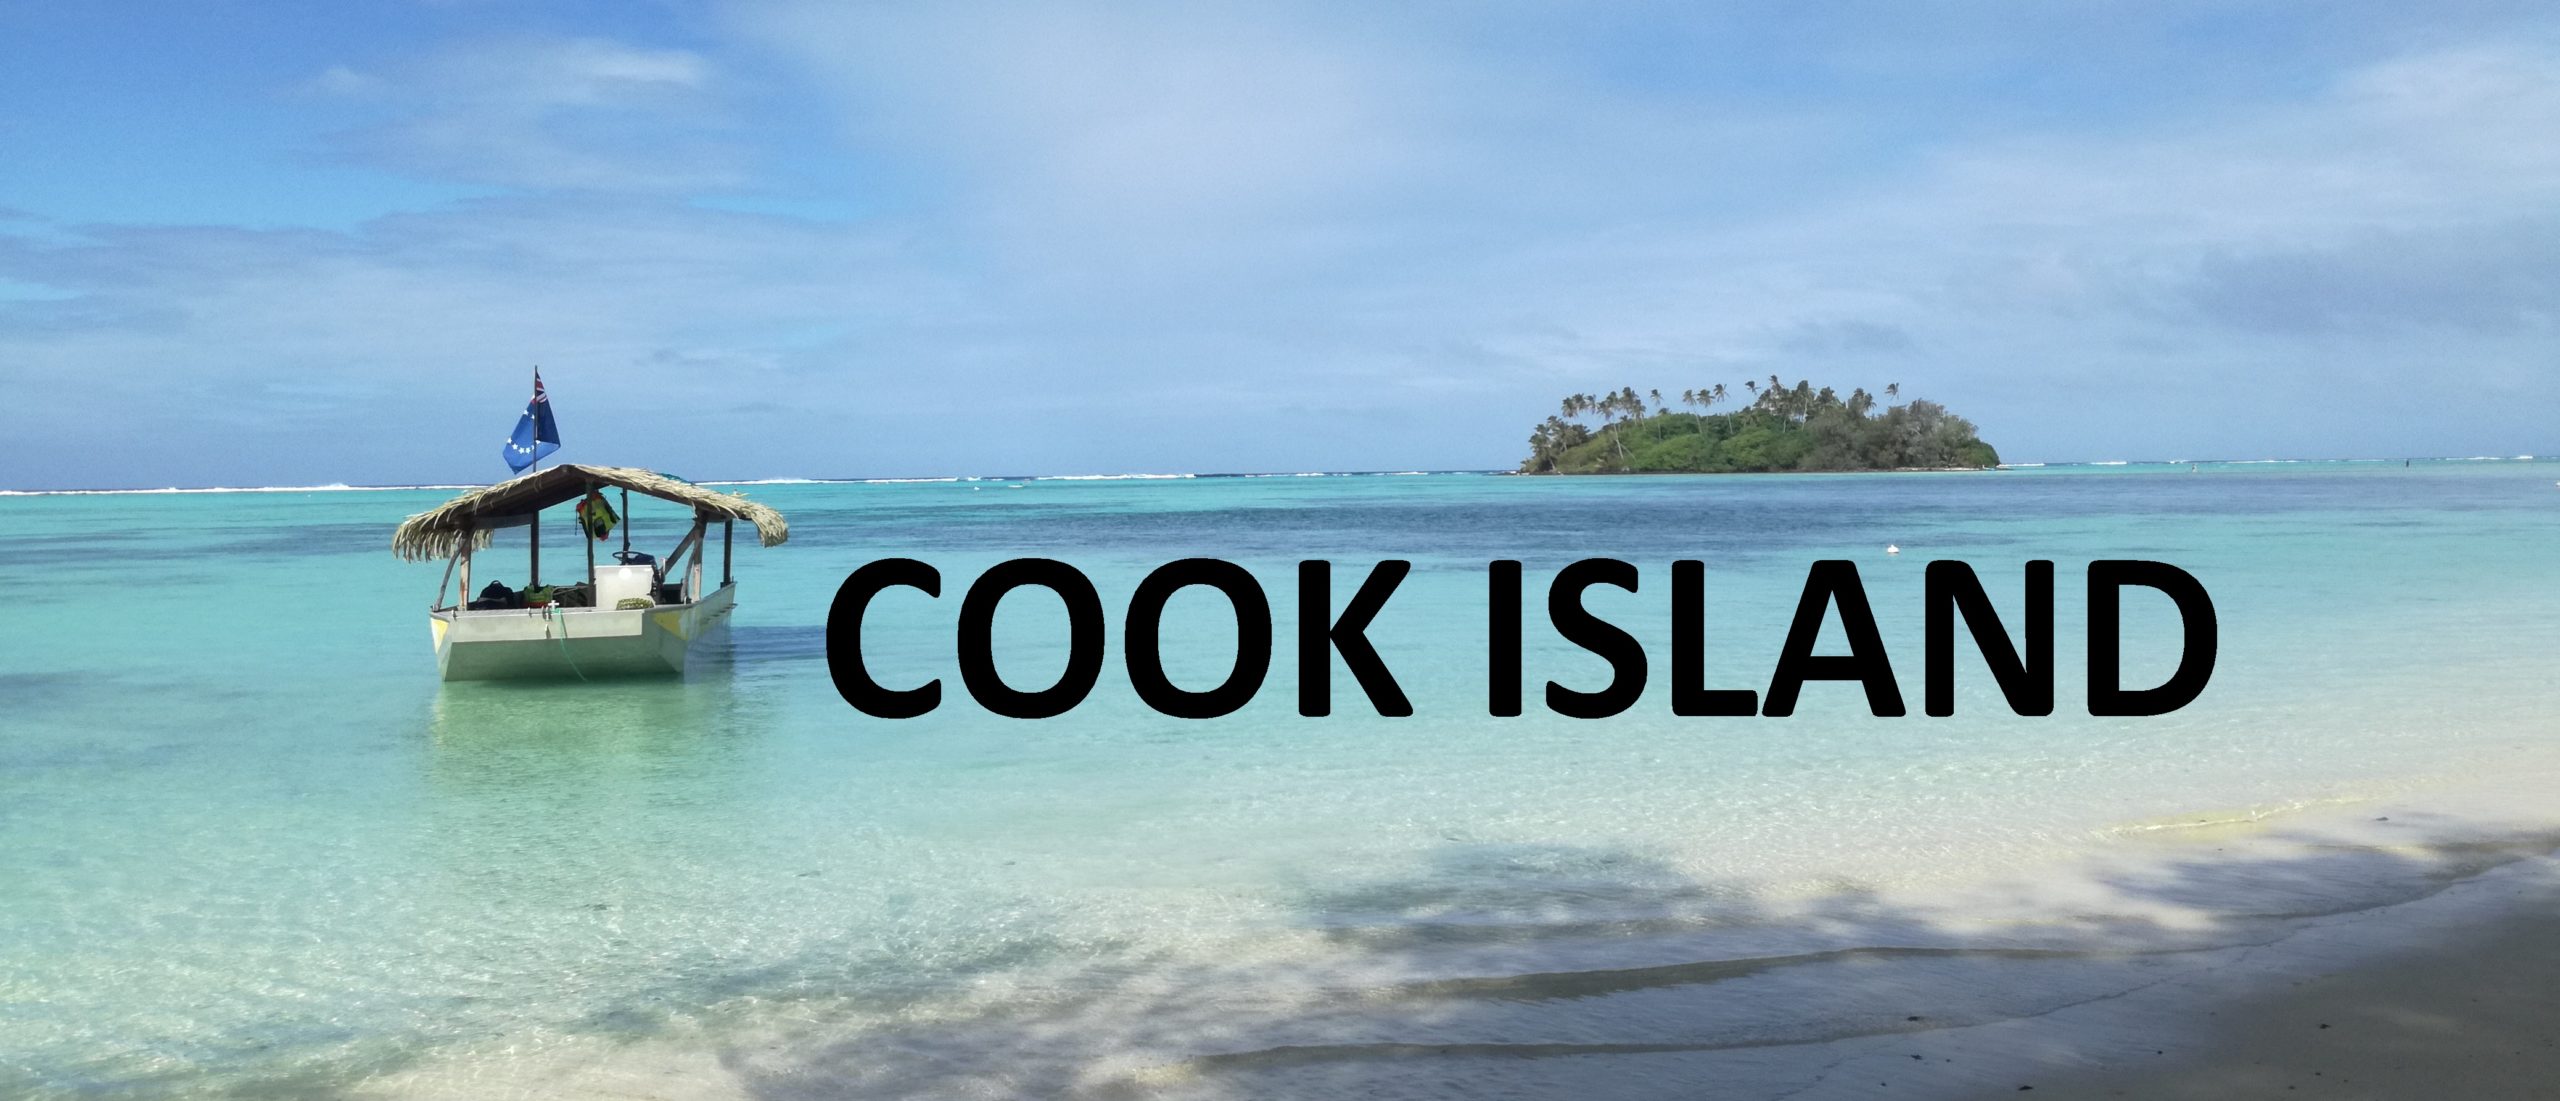 COOK-ISLAND-blog-scaled.jpg